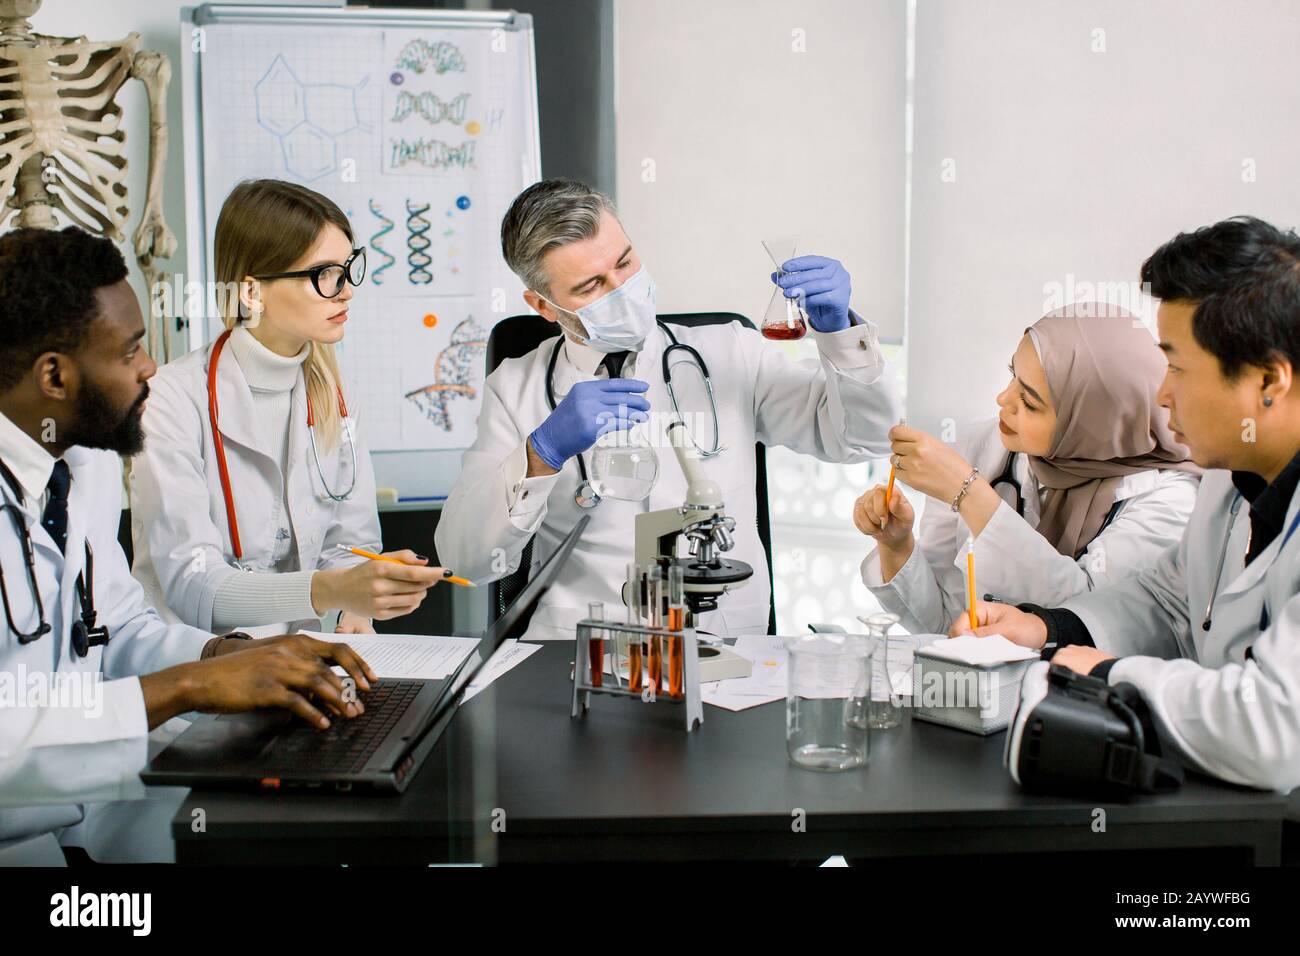 Team di scienziati multietnici in camici di laboratorio moderni condurre ricerche mediche alla ricerca di vaccini o nuovi farmaci. Uomo maturo nella maschera che guarda Foto Stock